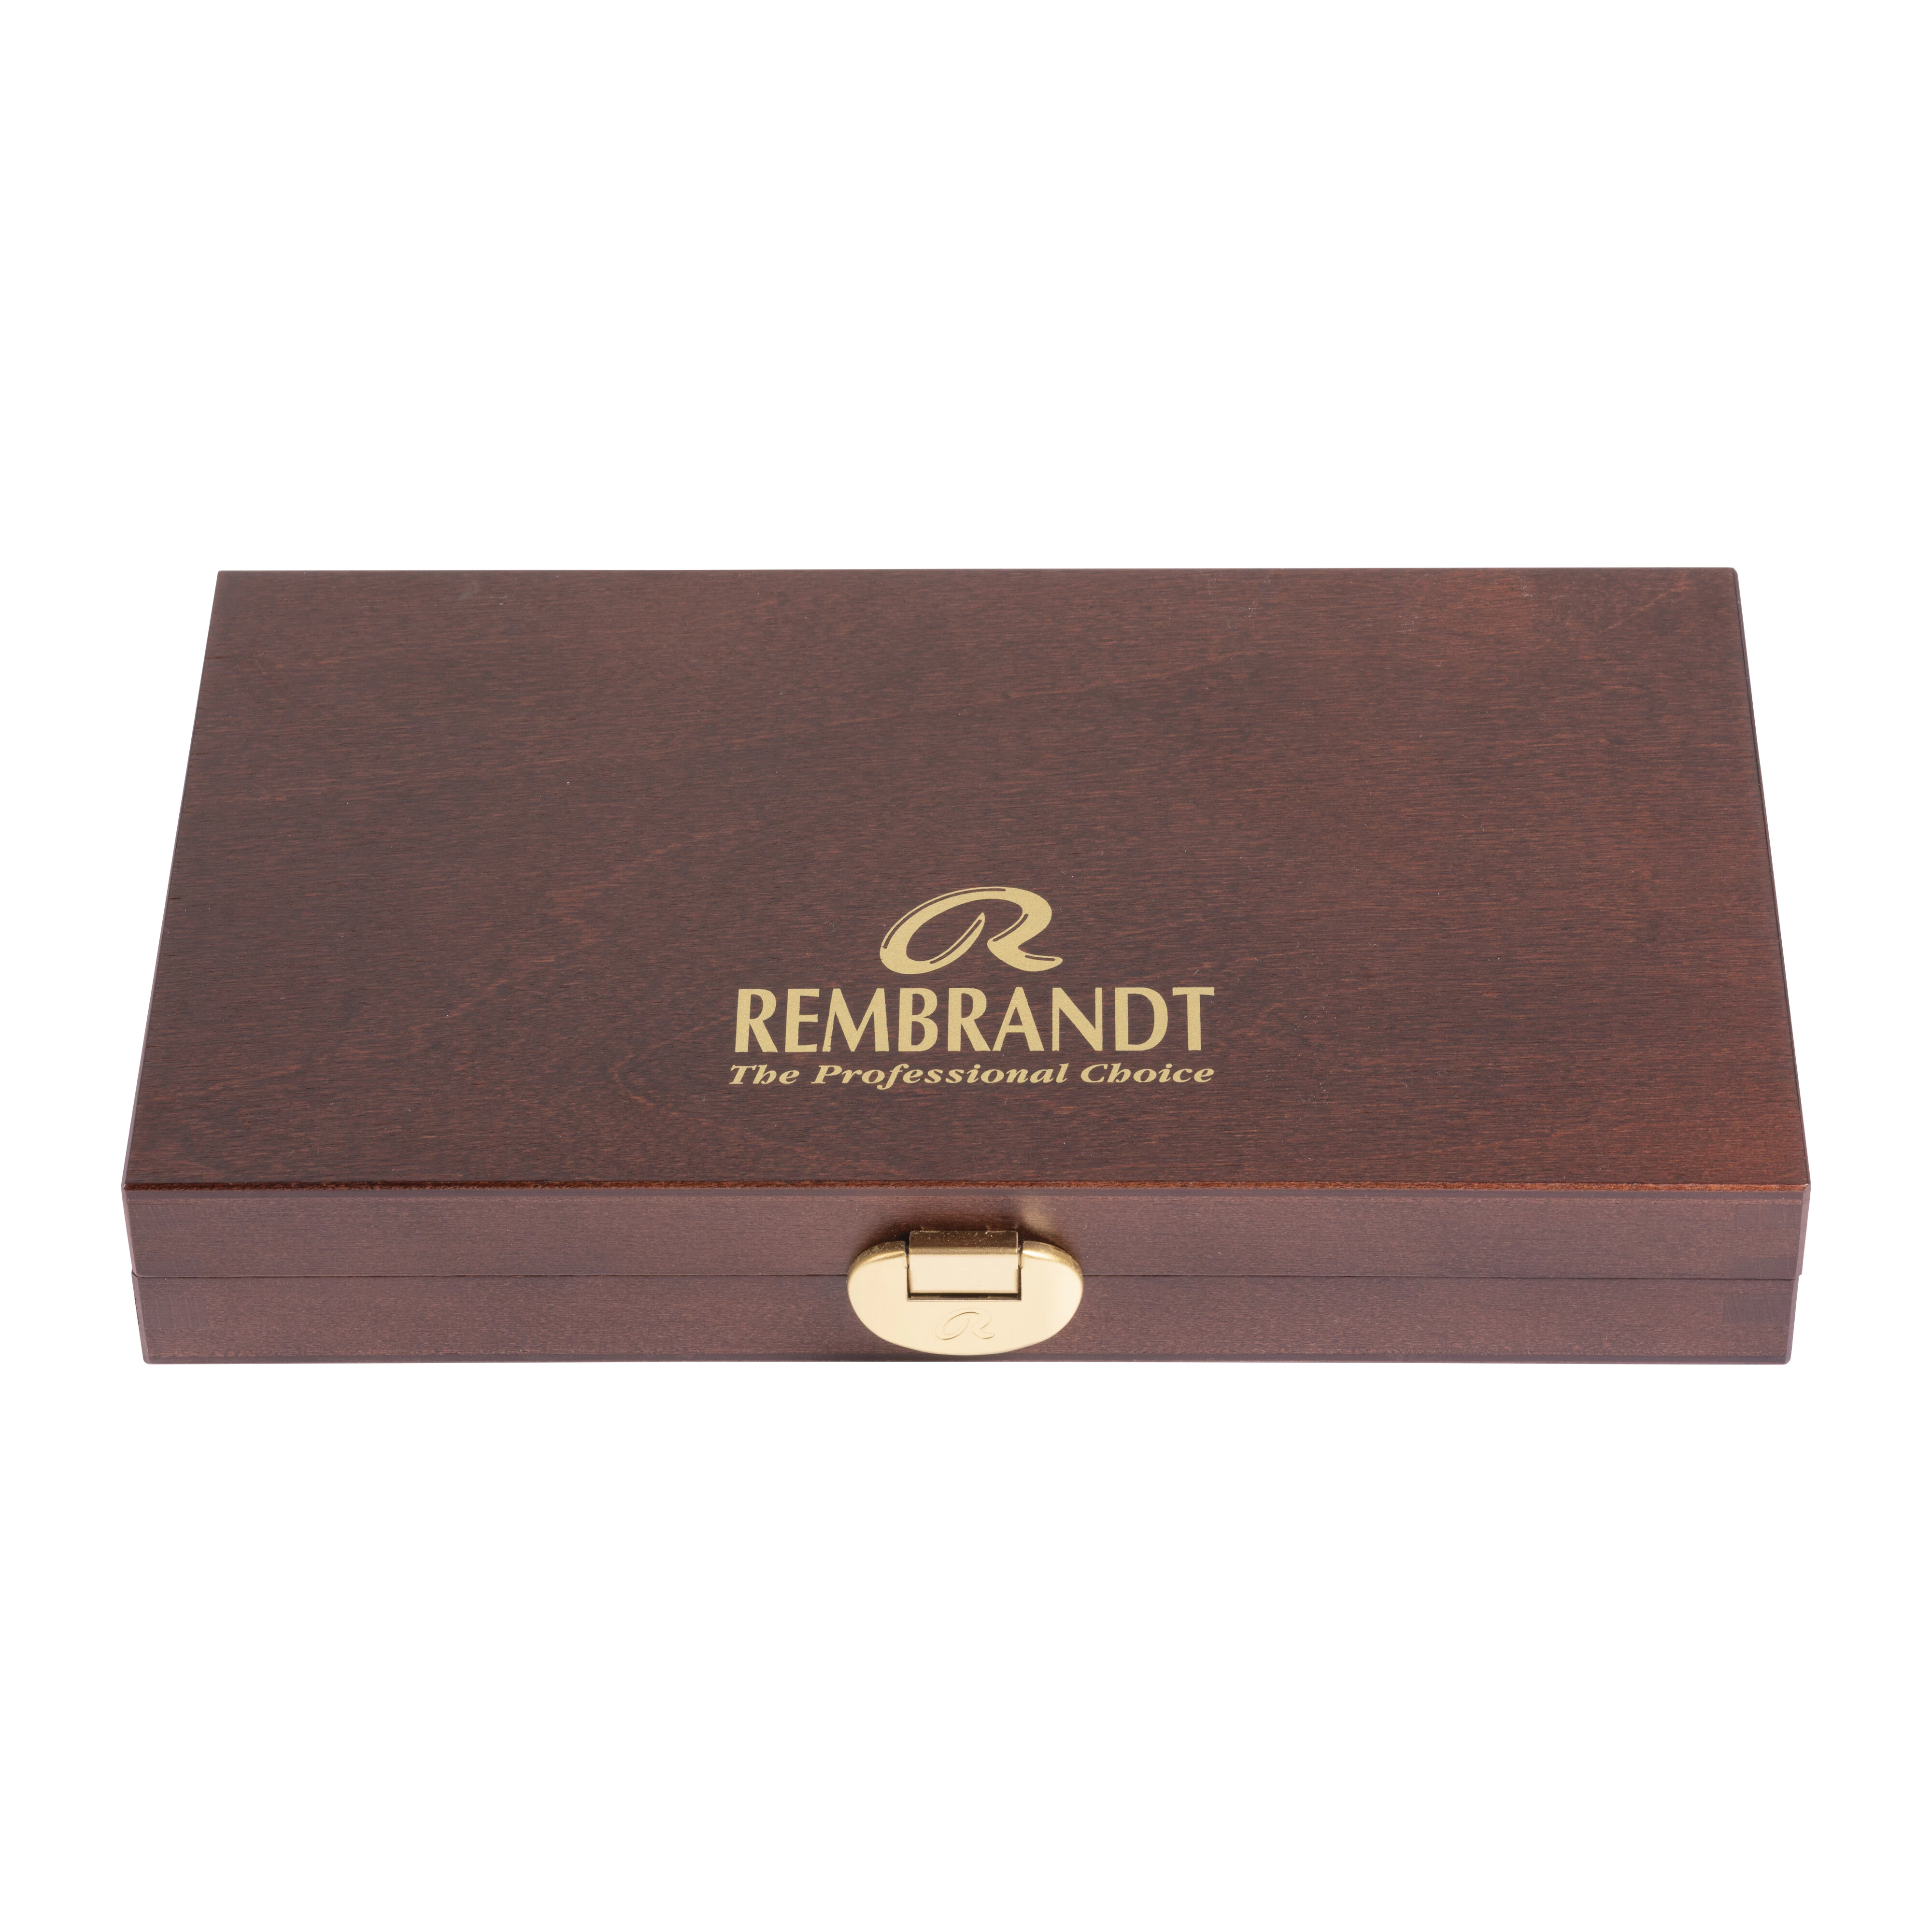 Rembrandt Acuarelas profesionales, set Traditional en caja de madera, 12 tubos de 10 ml + 2 accesorios, selección general de colores